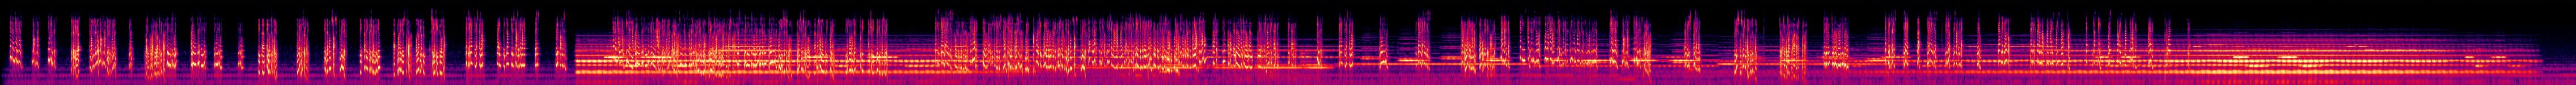 The Afterlife - 1 - Spectrogram.jpg